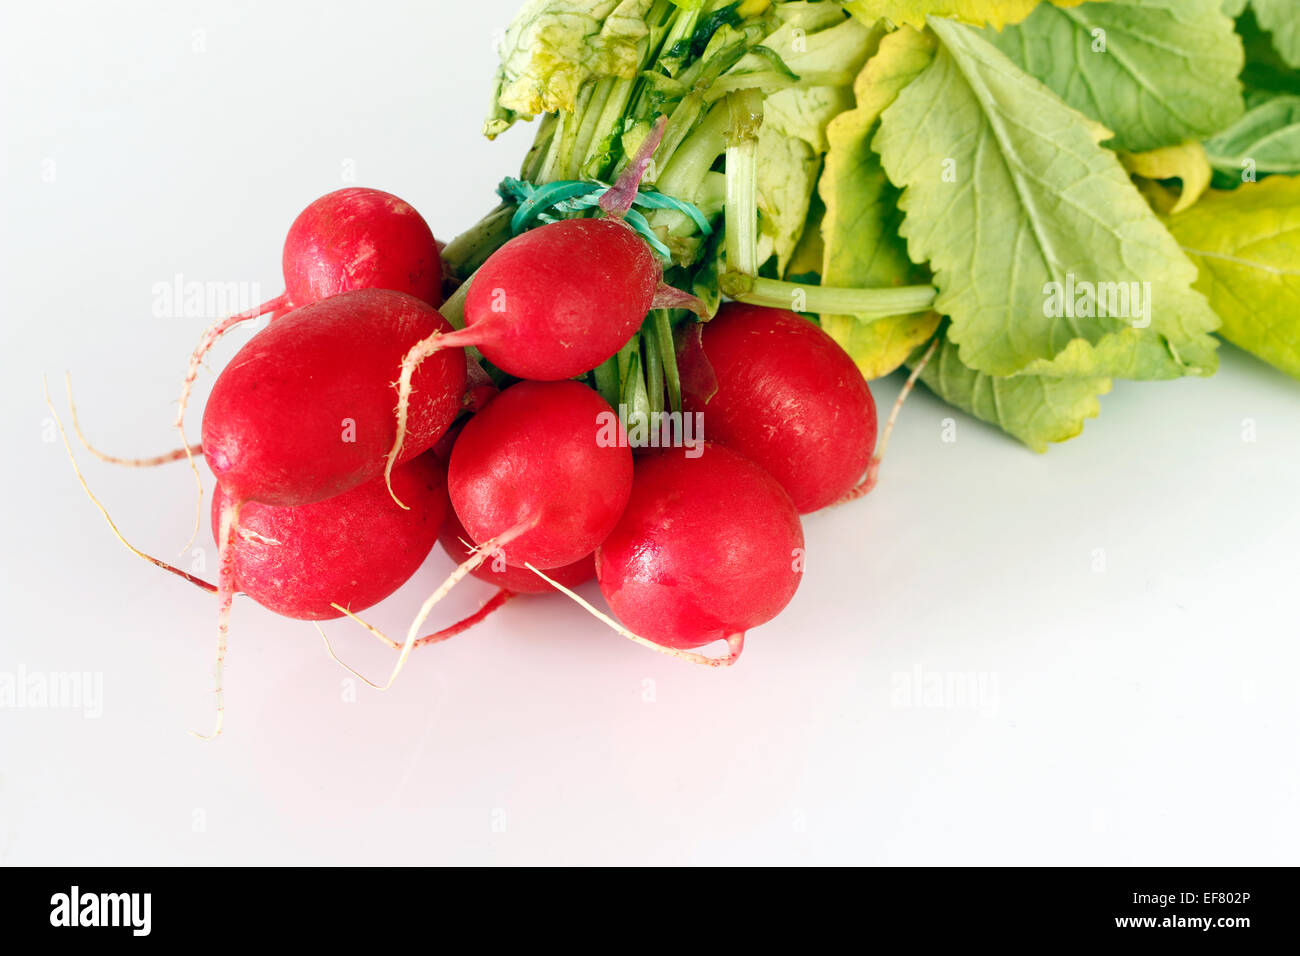 bundle of radishes Stock Photo